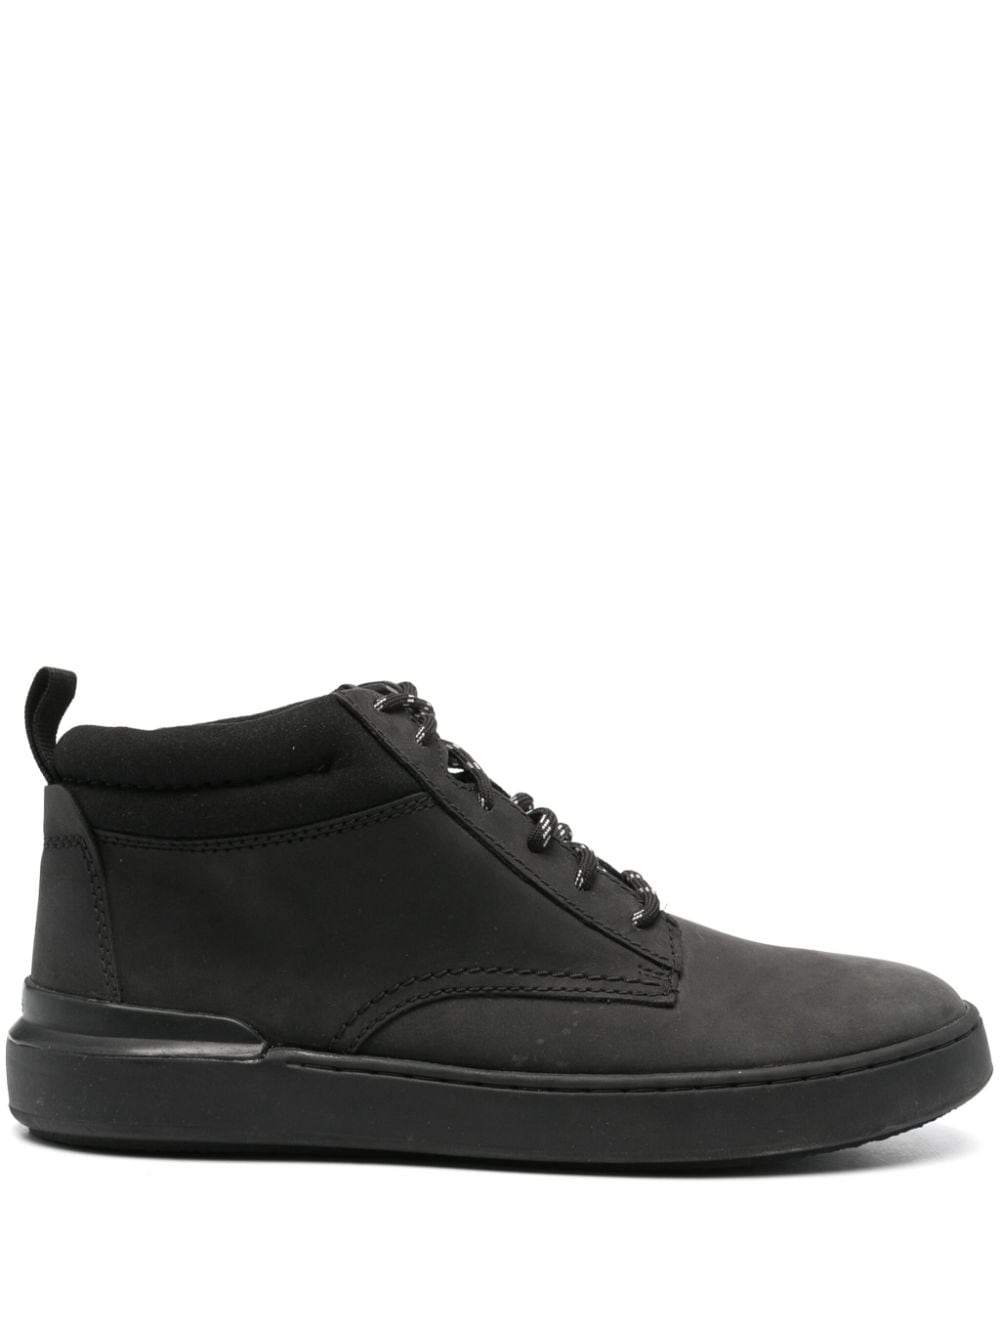 Clarks CourtLite Mid leather boots Zwart